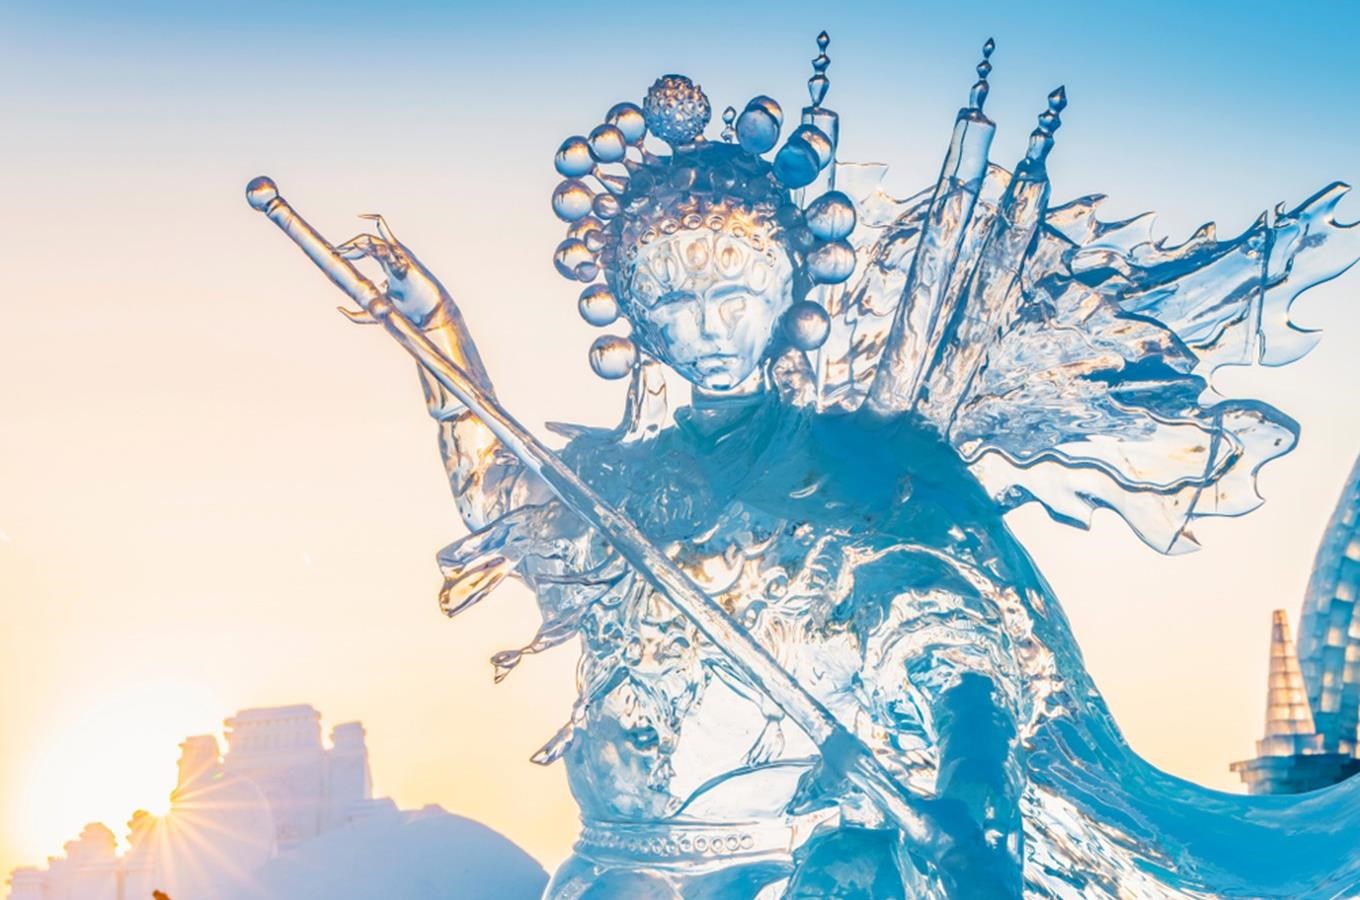 Festival ledových soch proběhne o víkendu na Harfě v Praze